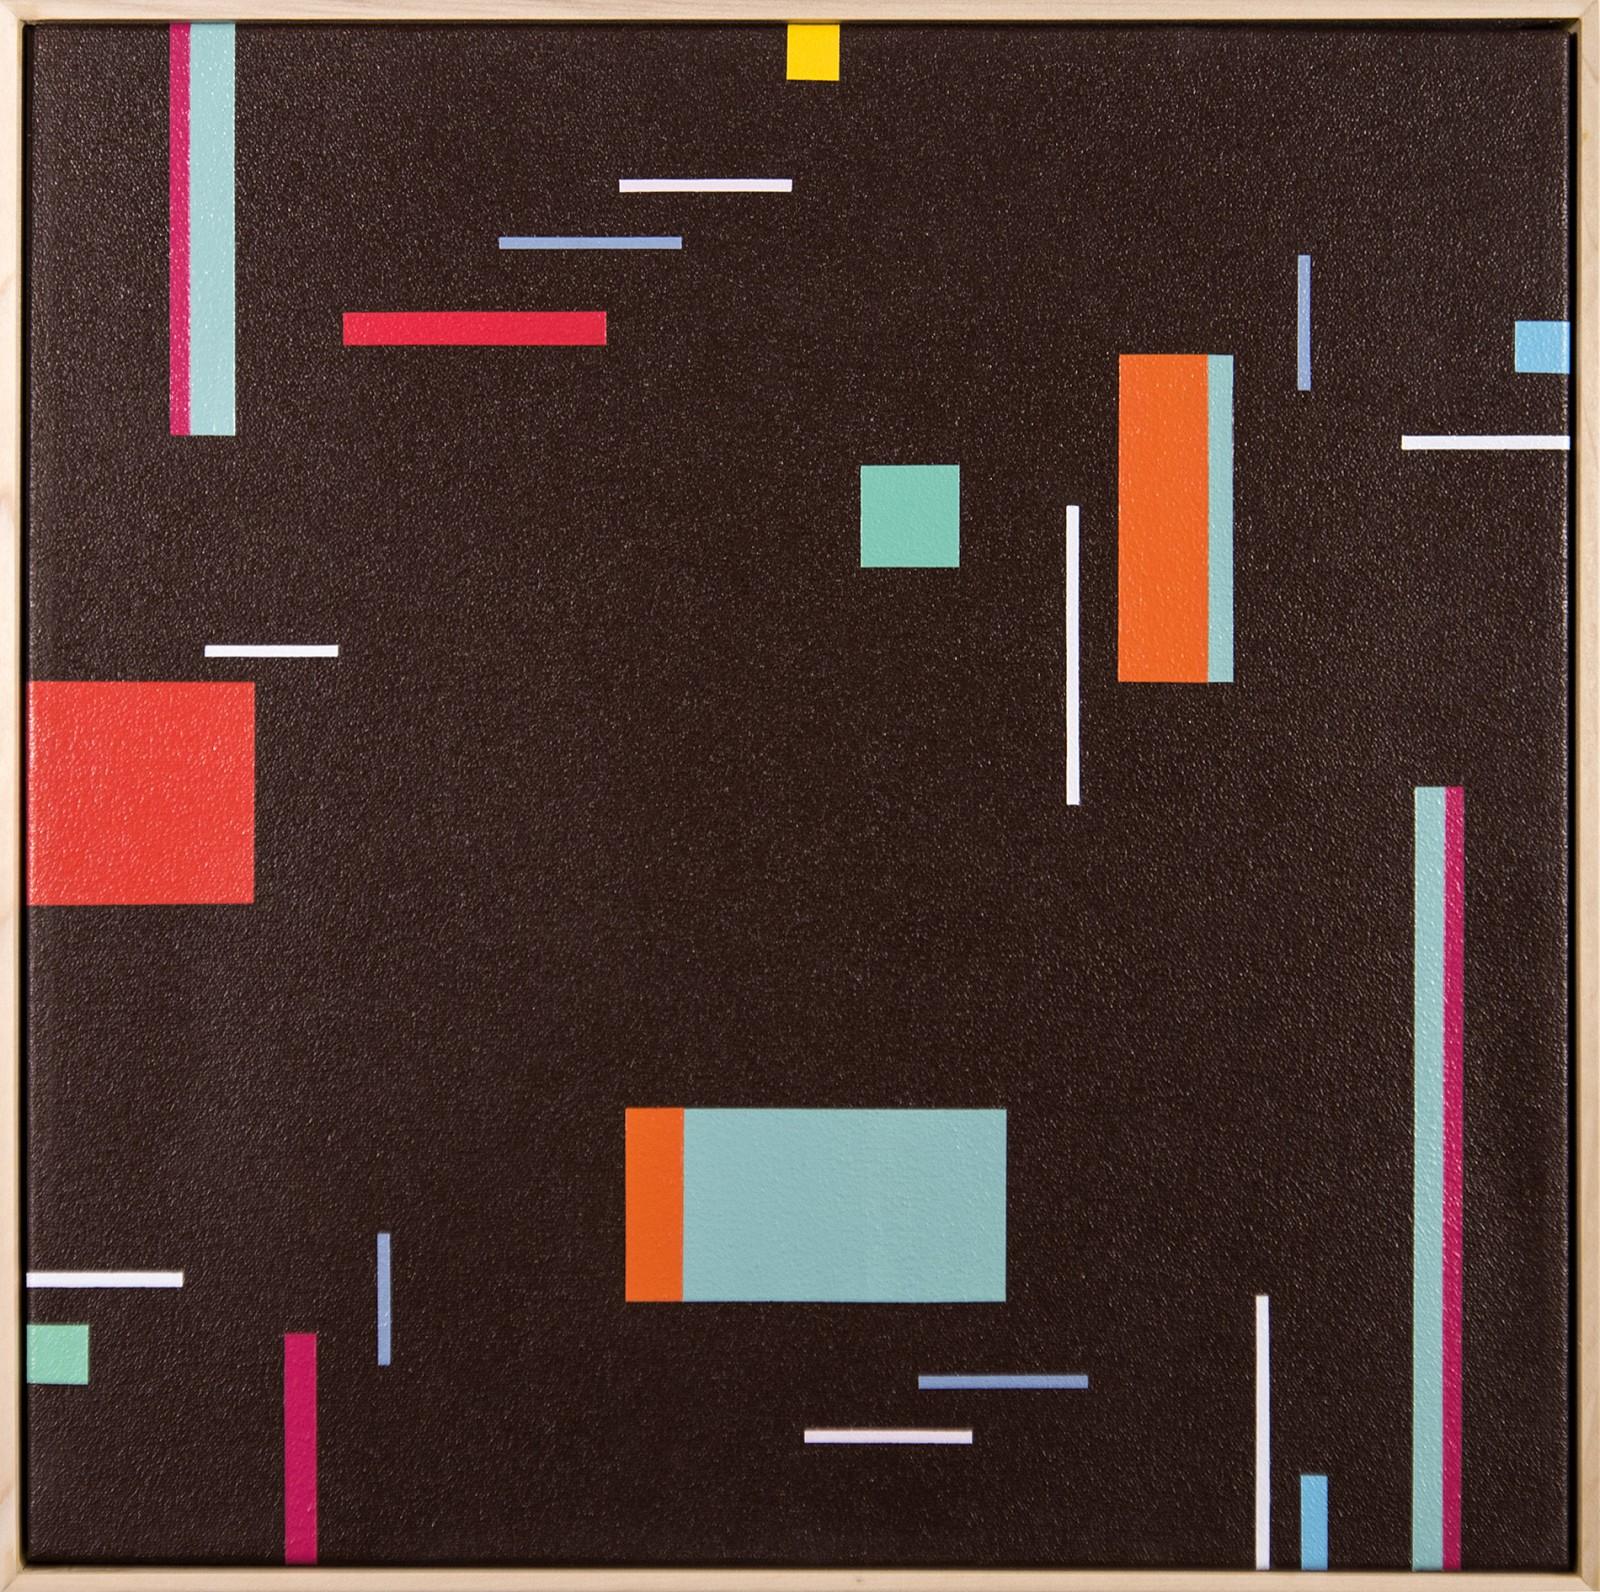 Abstract Painting Burton Kramer - Epiphany 6 - abstraction géométrique audacieuse et colorée, moderniste, acrylique sur toile